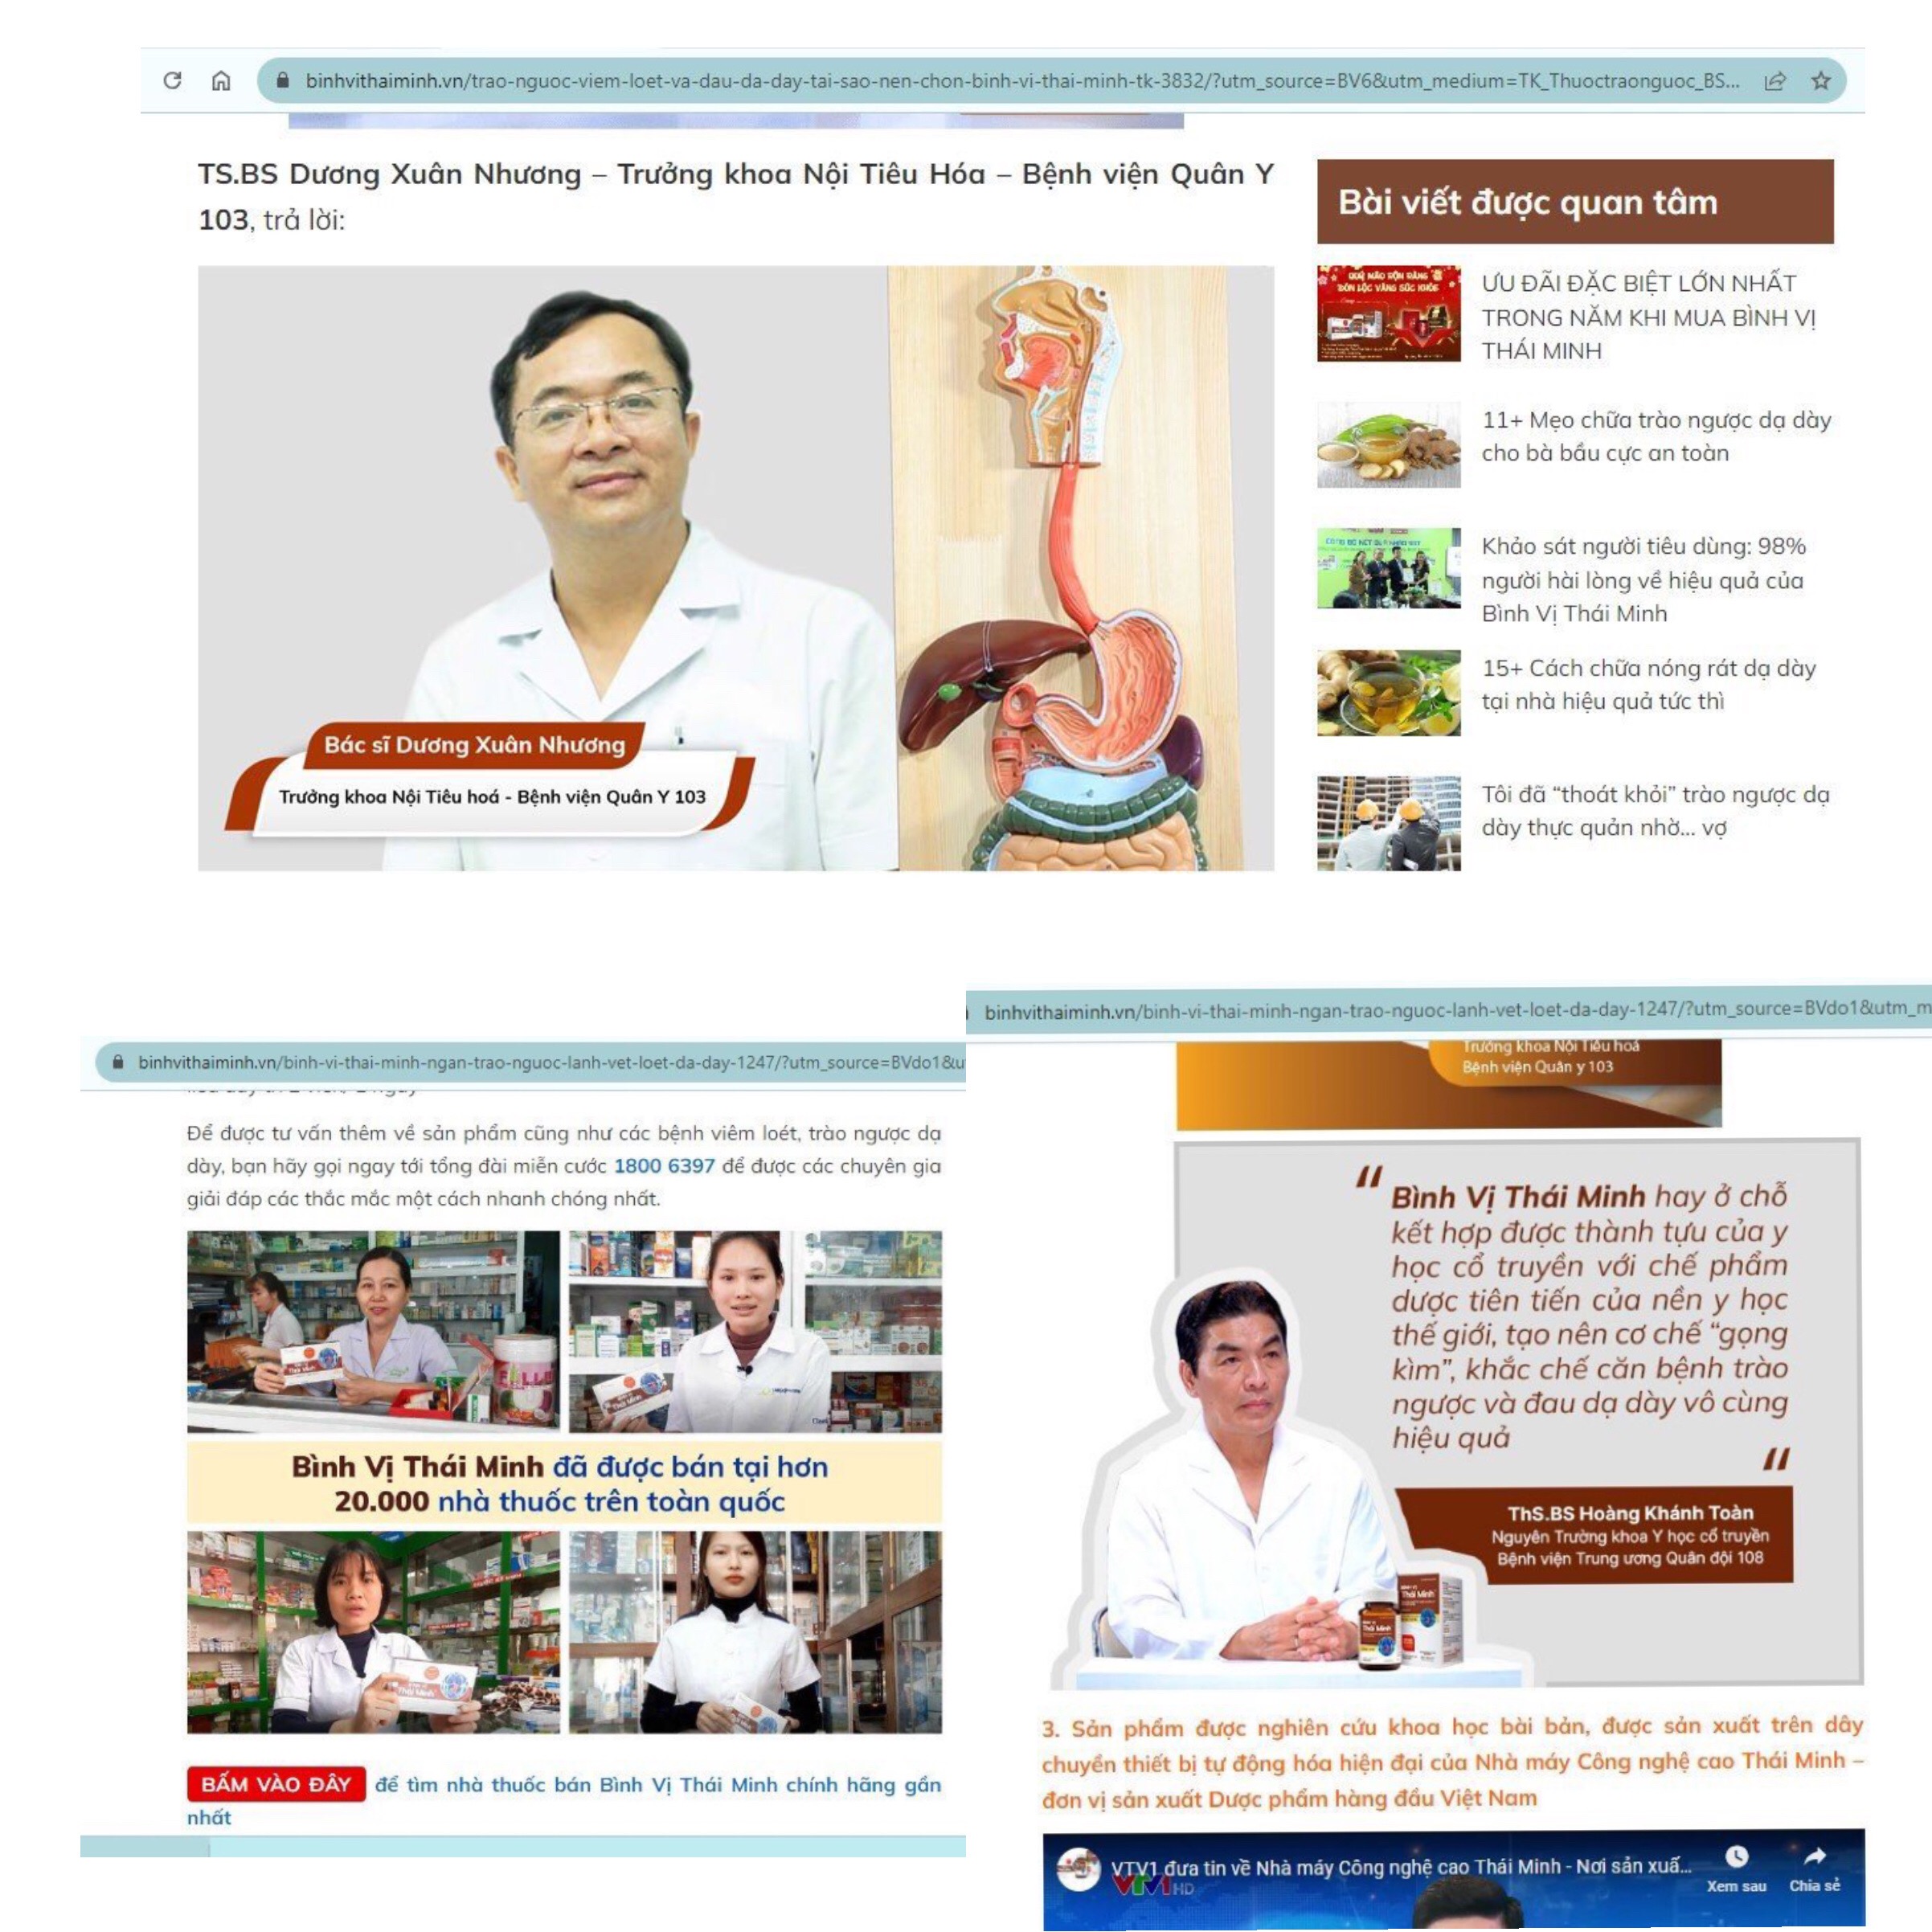 Kinh doanh - “Loạn” quảng cáo thực phẩm bảo vệ sức khoẻ - Bài 1: Điểm mặt Bình vị Thái Minh, viên sủi Lady, Tố ngọc hoàn plus, Trinh nữ hoàng cung Crilin (Hình 6).